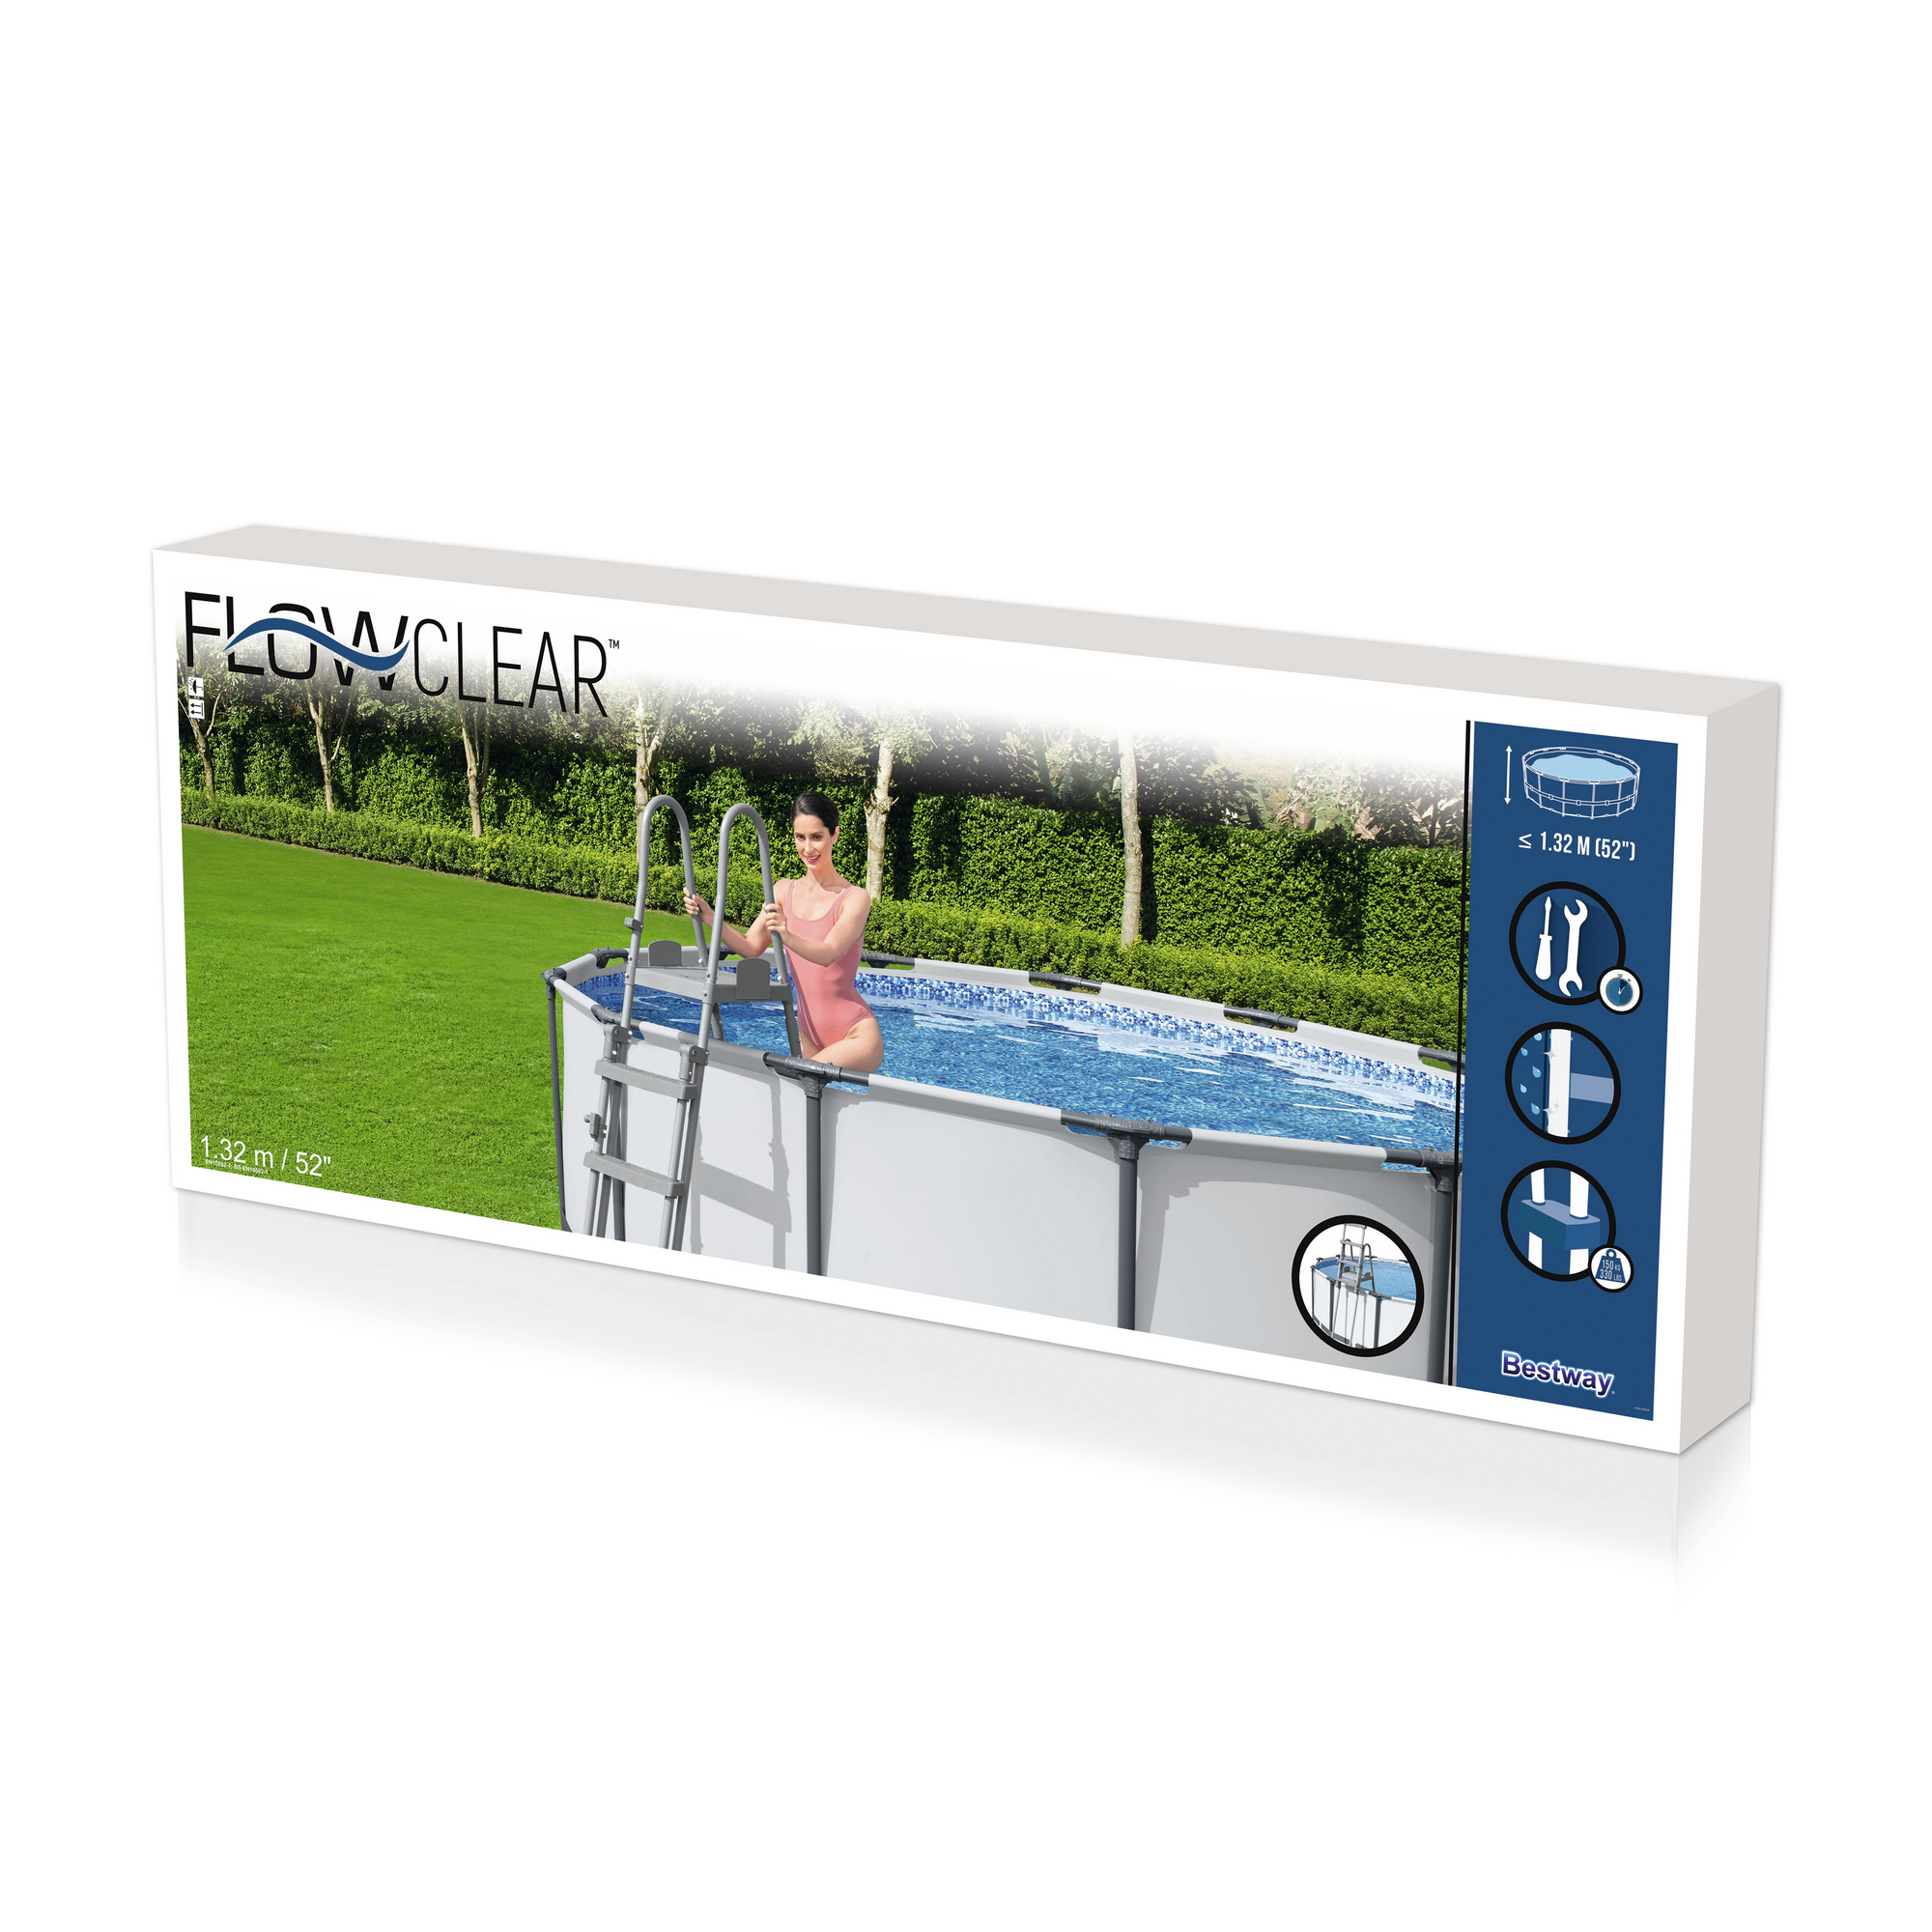 Pool-Sicherheitsleiter 'Flowclear™' Stahl 2 x 4 Stufen, 132 cm + product picture